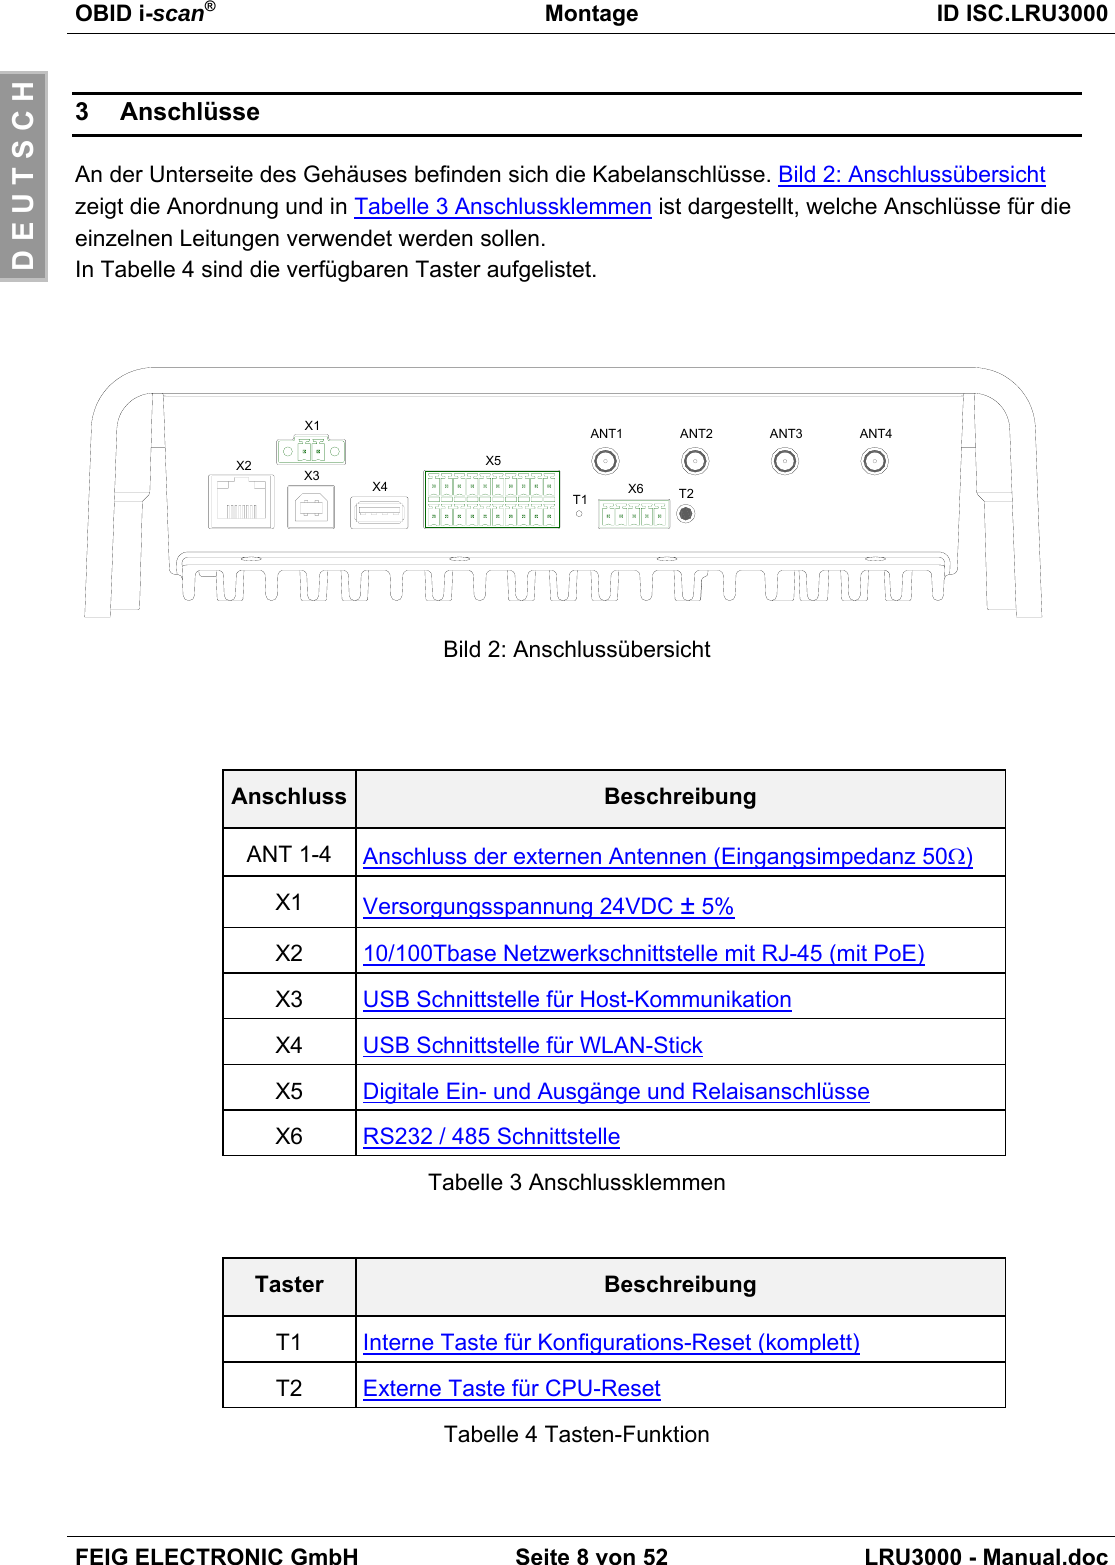 OBID i-scan®Montage ID ISC.LRU3000FEIG ELECTRONIC GmbH Seite 8 von 52 LRU3000 - Manual.docD E U T S C H3 AnschlüsseAn der Unterseite des Gehäuses befinden sich die Kabelanschlüsse. Bild 2: Anschlussübersichtzeigt die Anordnung und in Tabelle 3 Anschlussklemmen ist dargestellt, welche Anschlüsse für dieeinzelnen Leitungen verwendet werden sollen.In Tabelle 4 sind die verfügbaren Taster aufgelistet.X2 X3 X4X5X6T1 T2X1 ANT1 ANT2 ANT3 ANT4Bild 2: AnschlussübersichtAnschluss BeschreibungANT 1-4 Anschluss der externen Antennen (Eingangsimpedanz 50Ω)X1 Versorgungsspannung 24VDC ± 5%X2 10/100Tbase Netzwerkschnittstelle mit RJ-45 (mit PoE)X3 USB Schnittstelle für Host-KommunikationX4 USB Schnittstelle für WLAN-StickX5 Digitale Ein- und Ausgänge und RelaisanschlüsseX6 RS232 / 485 SchnittstelleTabelle 3 AnschlussklemmenTaster BeschreibungT1 Interne Taste für Konfigurations-Reset (komplett)T2 Externe Taste für CPU-ResetTabelle 4 Tasten-Funktion